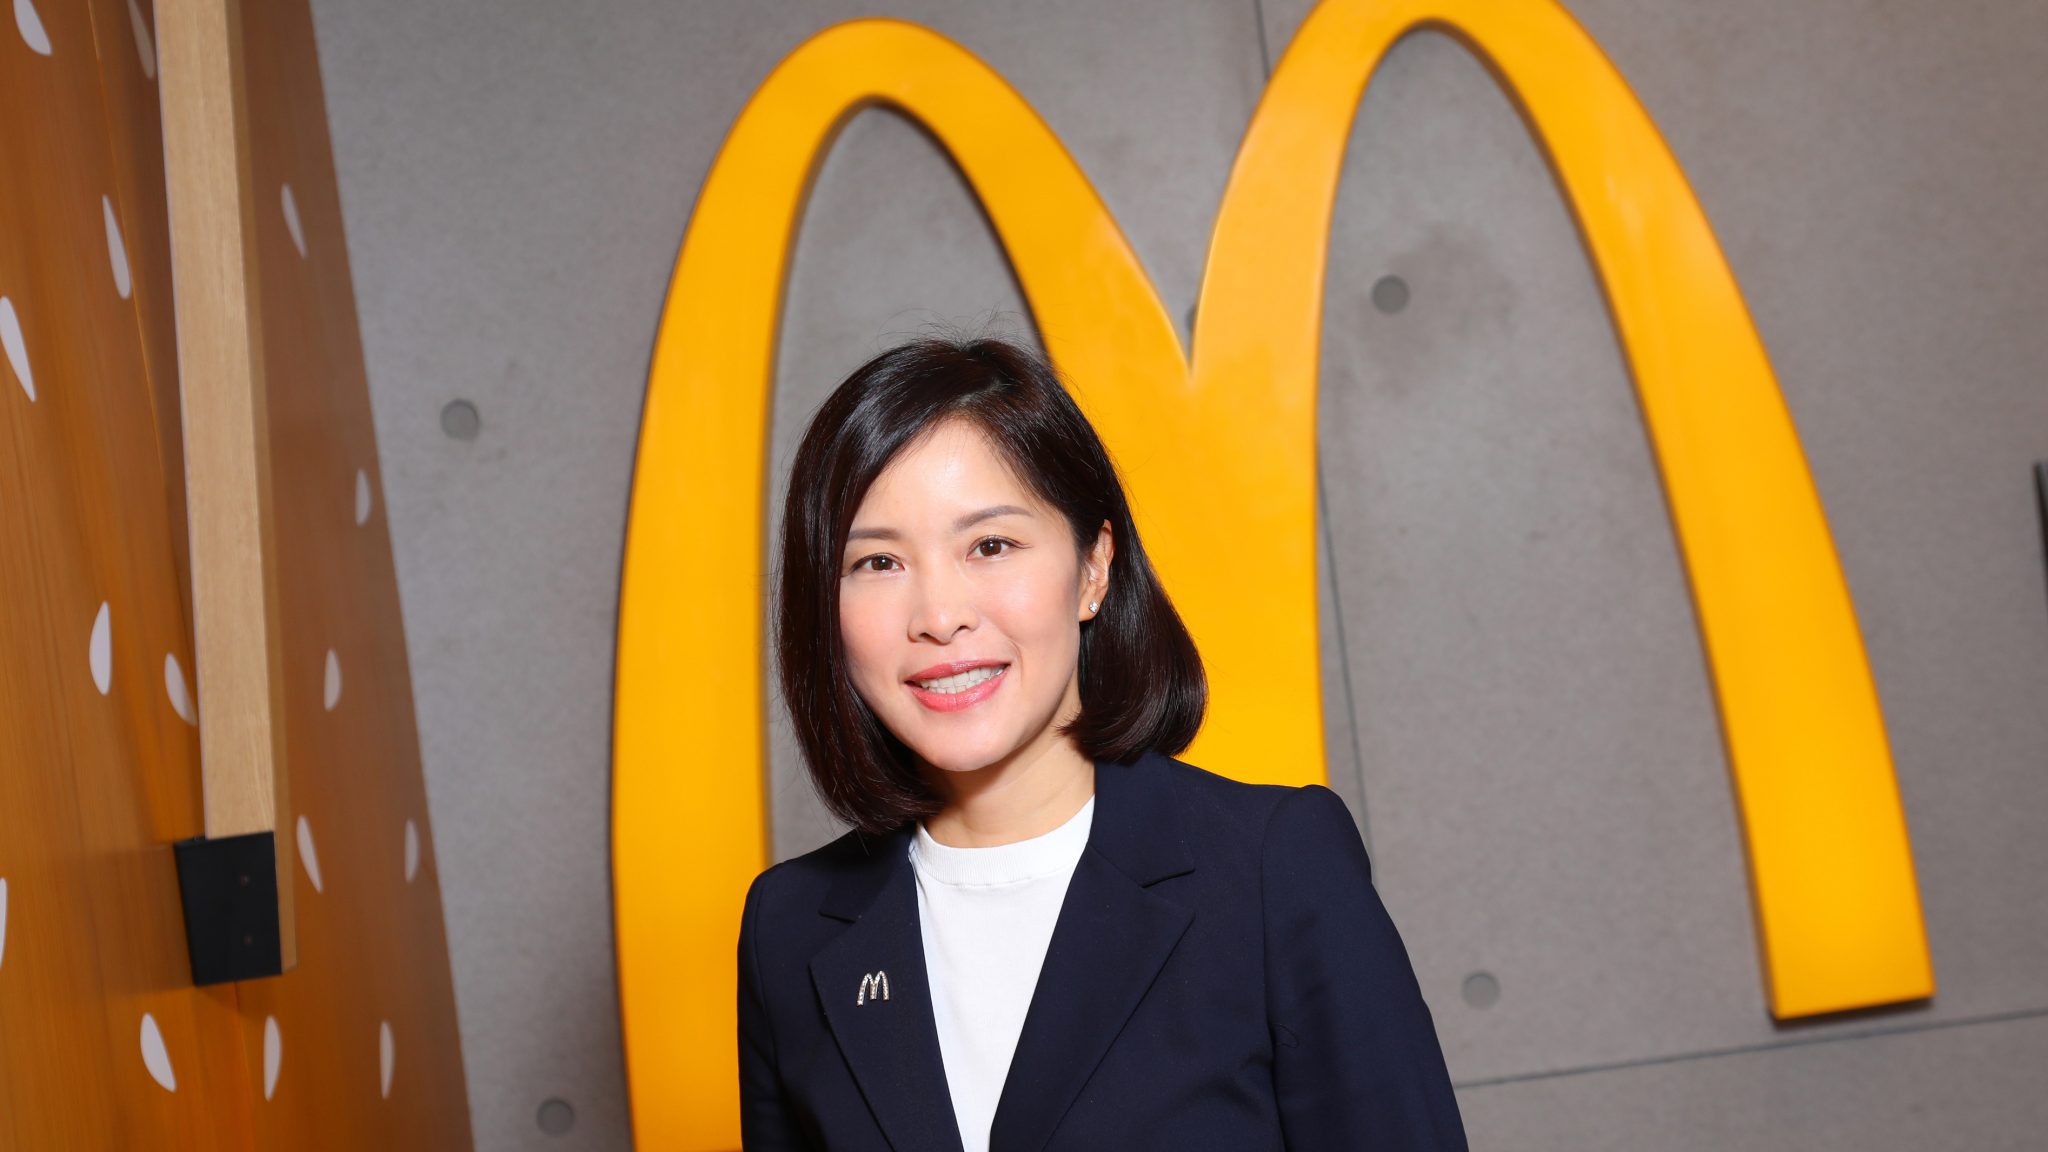 Randy Lai, CEO de McDonald's Hong Kong, es la encargada del desarrollo de este metaverso.